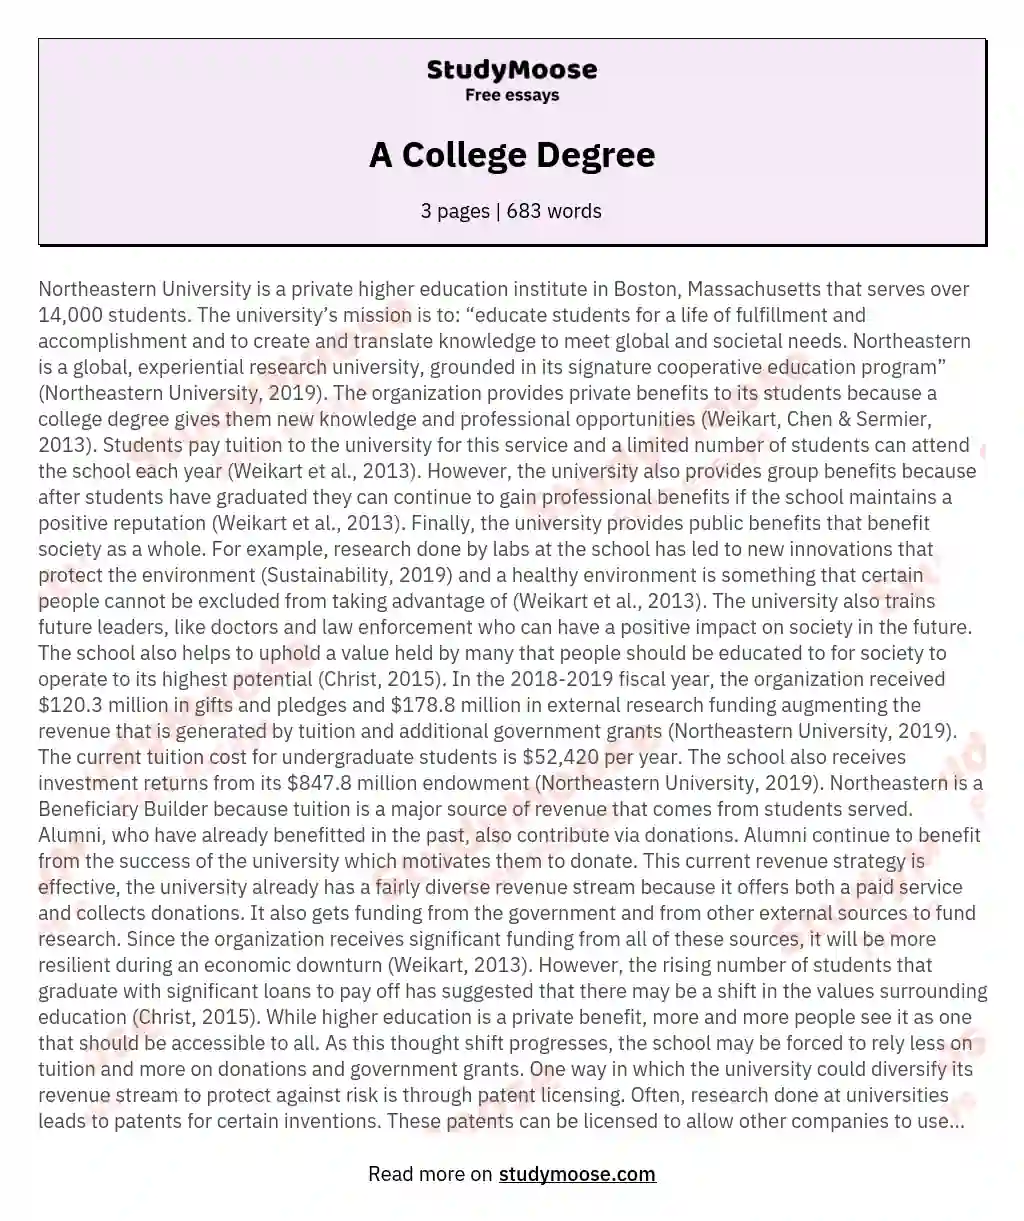 A College Degree essay